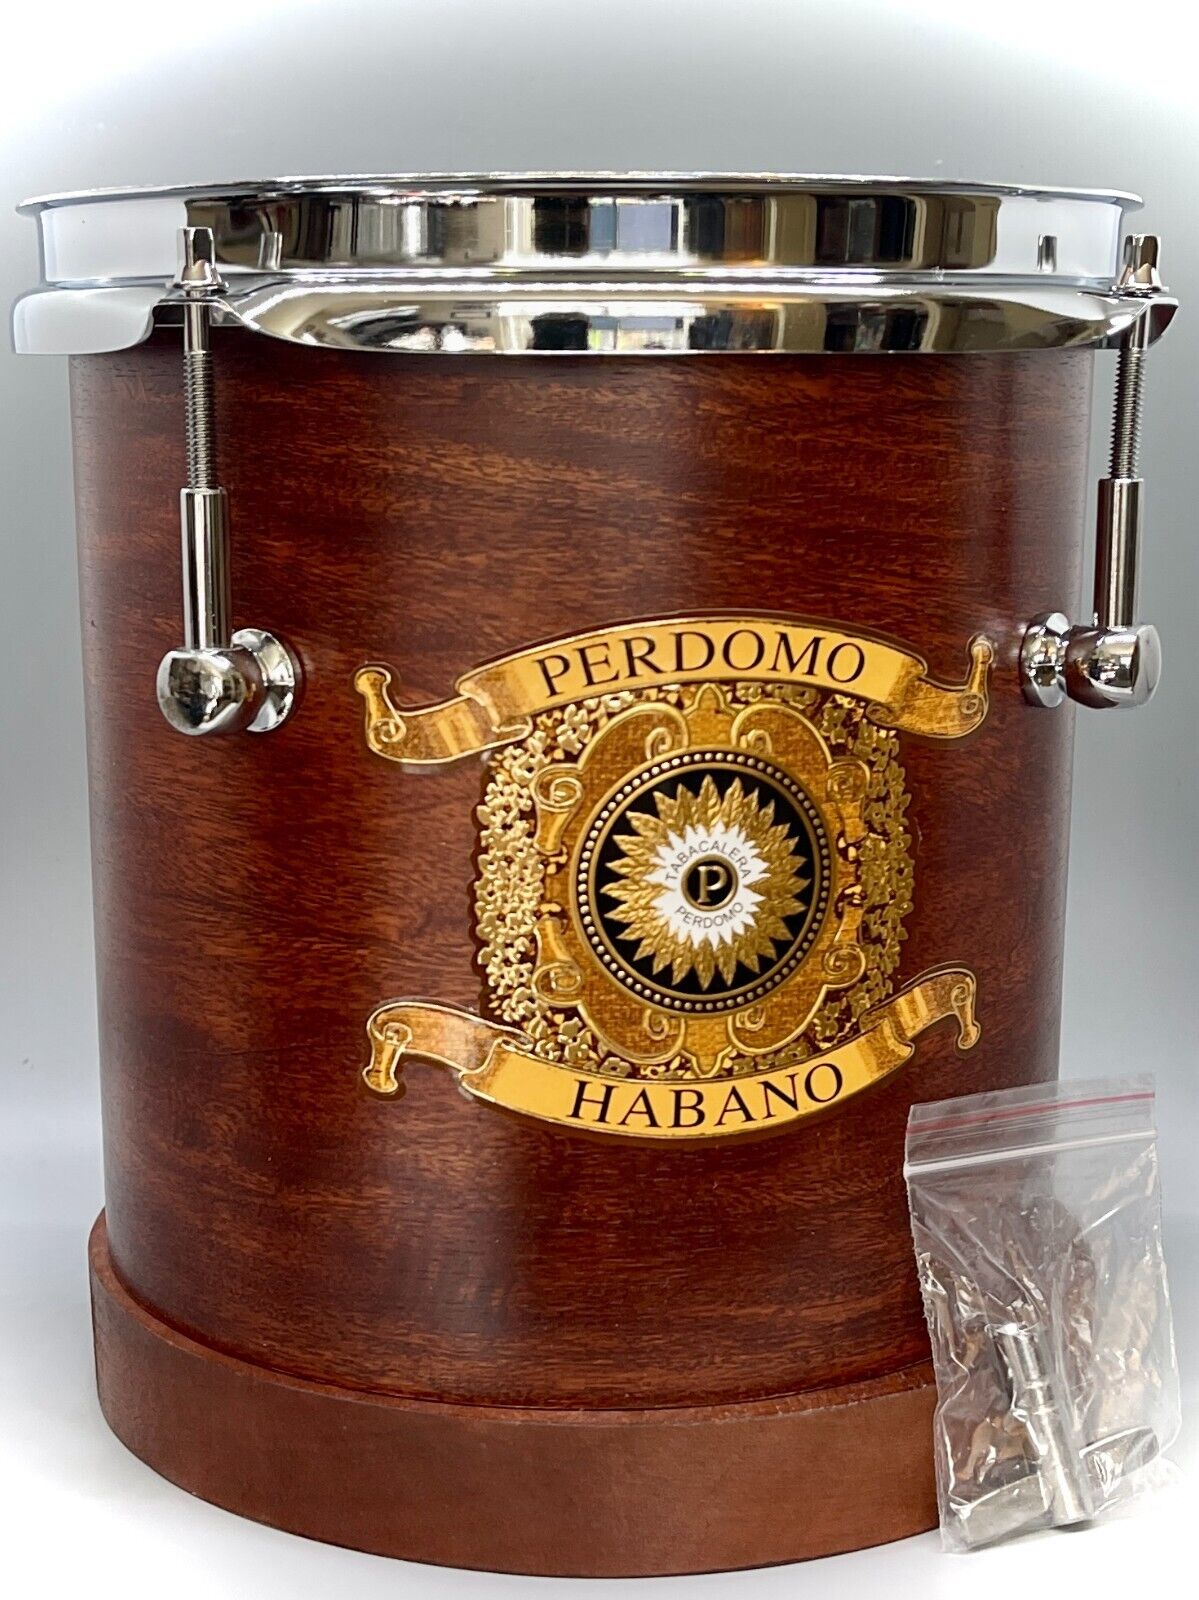 Perdomo Cigars Habano Barrel Sonor Drum Humidor RARE New Tuning key and box